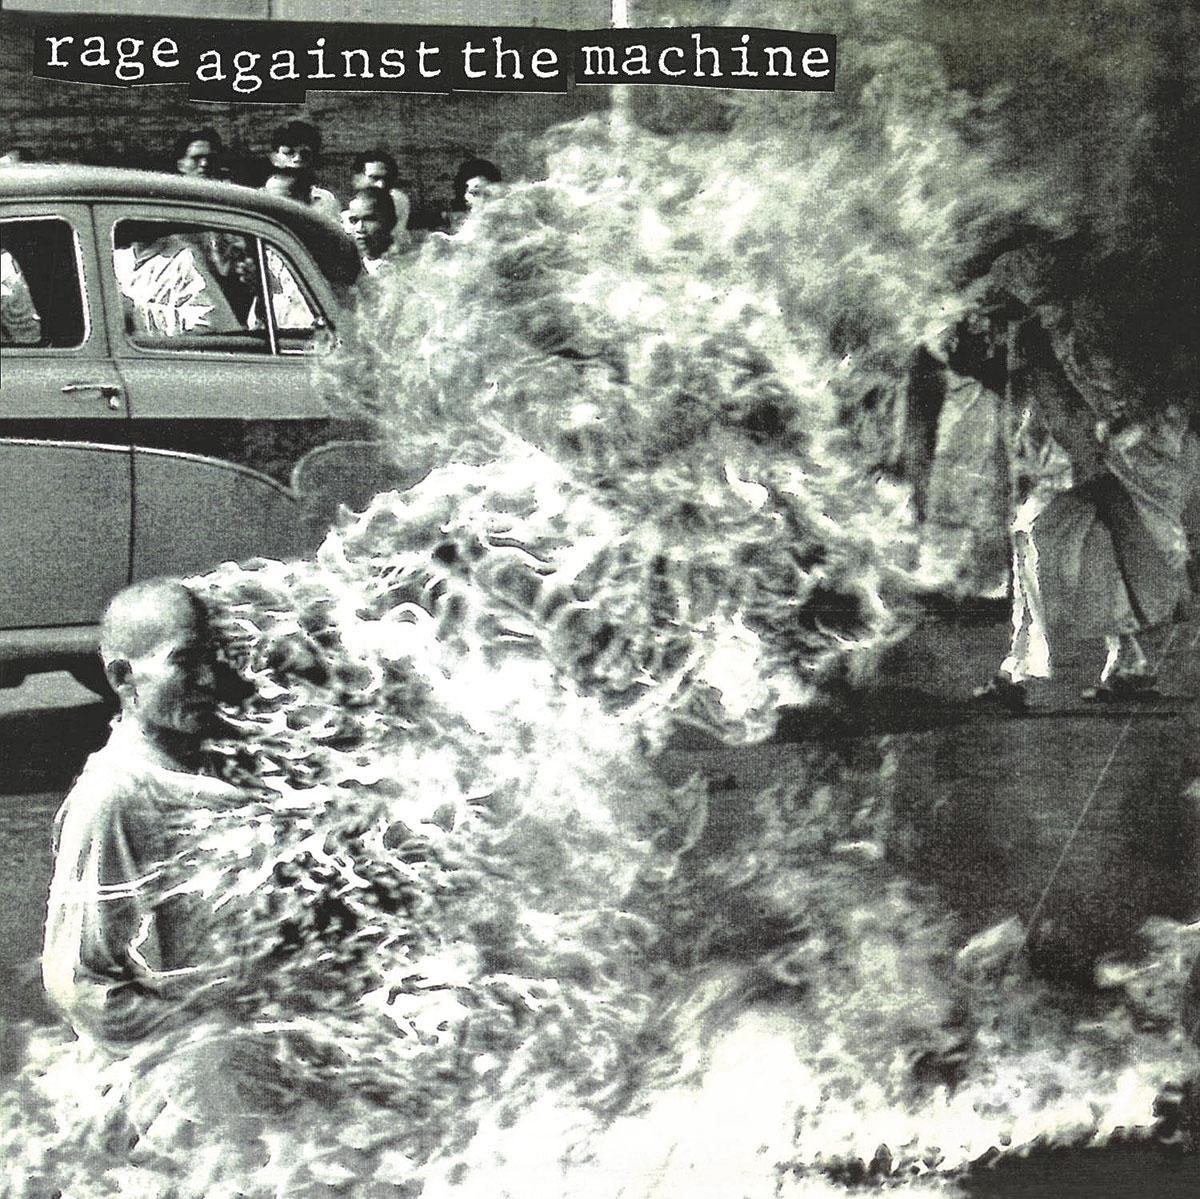 Rage Against The Machine  Rage Against The Machine (1992) La photo d'un moine bouddhiste vietnamien s'immolant en 1963 est devenue une marque recyclée par RATM.